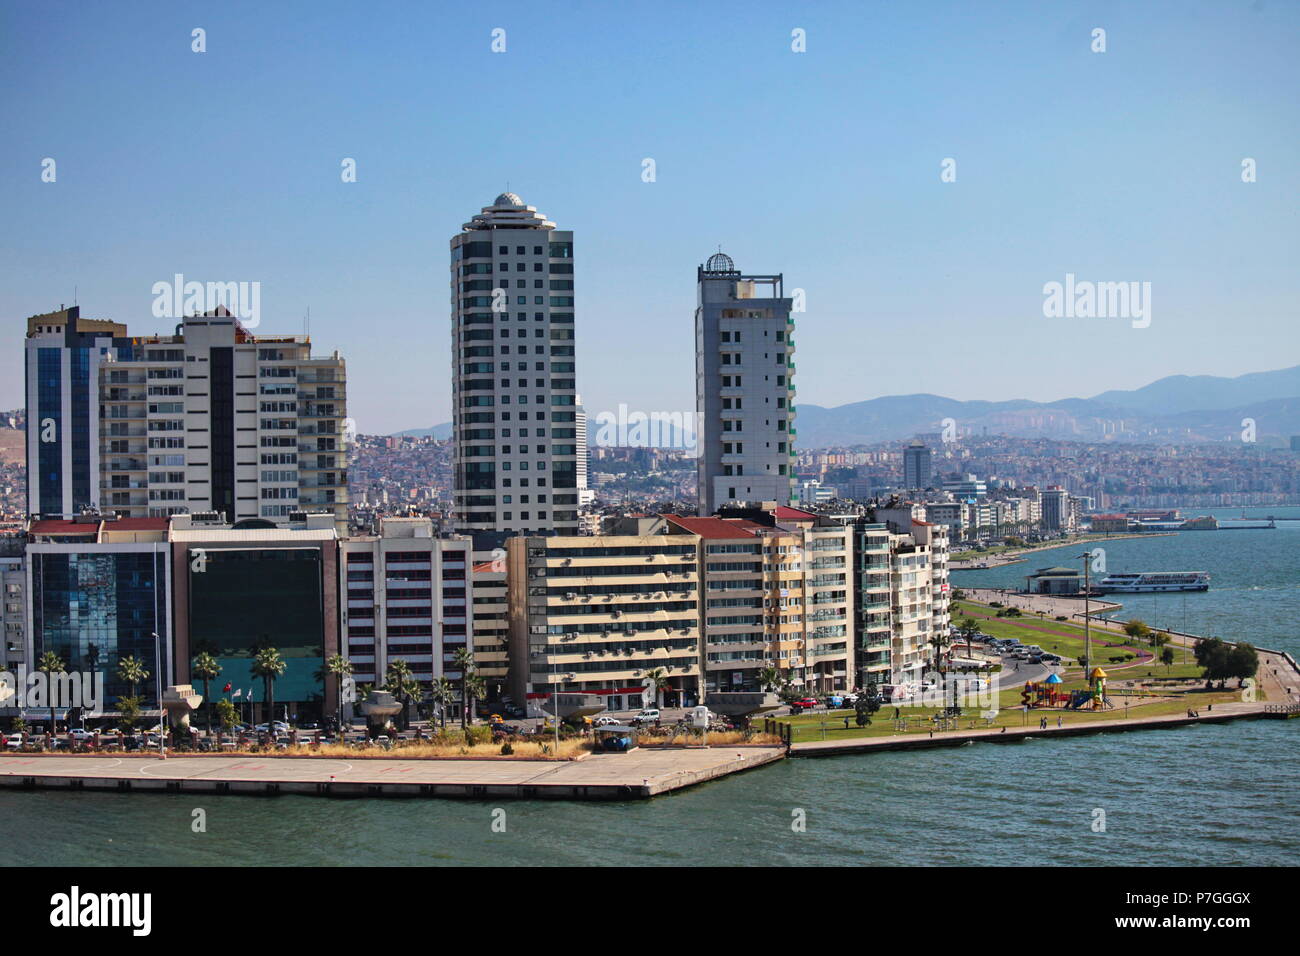 IZMIR, TURKEY - June 22, 2011:   Panoramic view of Izmir waterfront, Turkey Stock Photo